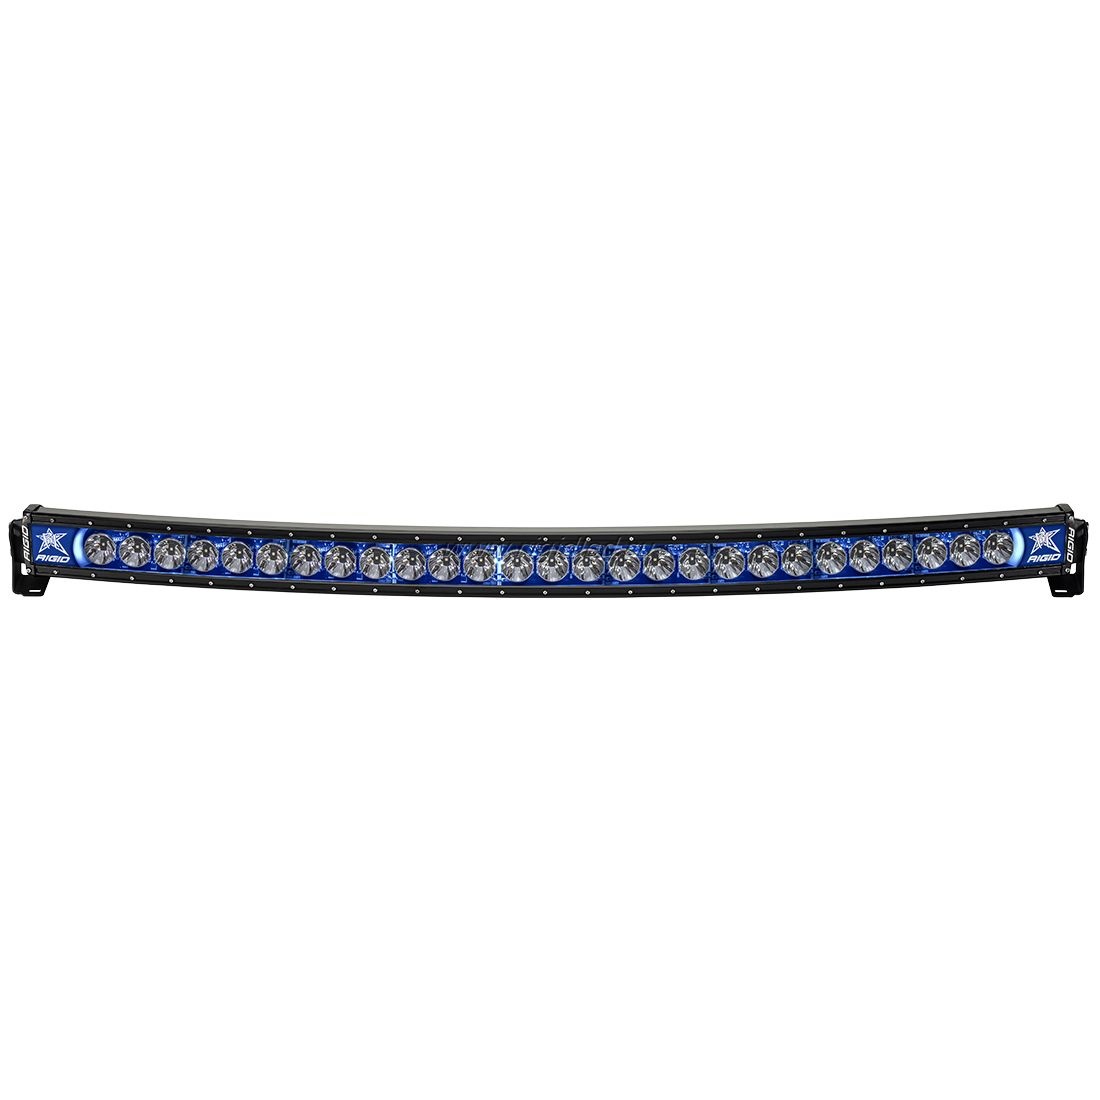 Фара RIGID 54" Radiance Curved серия - Синяя подсветка